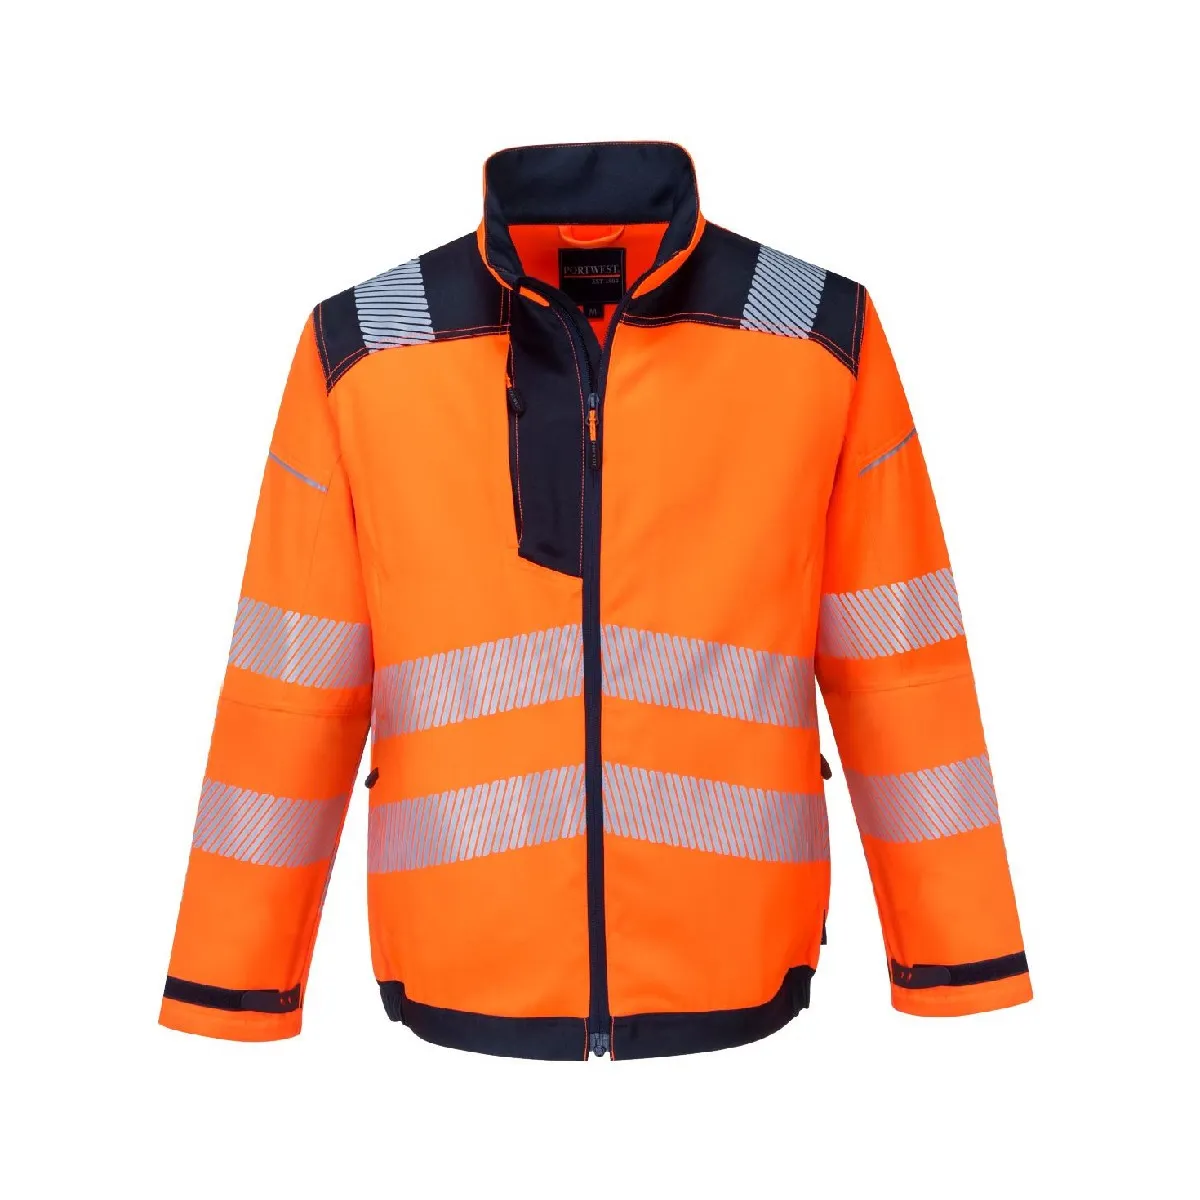 Visokovidljiva jakna T500 narandžasta - Portwest 